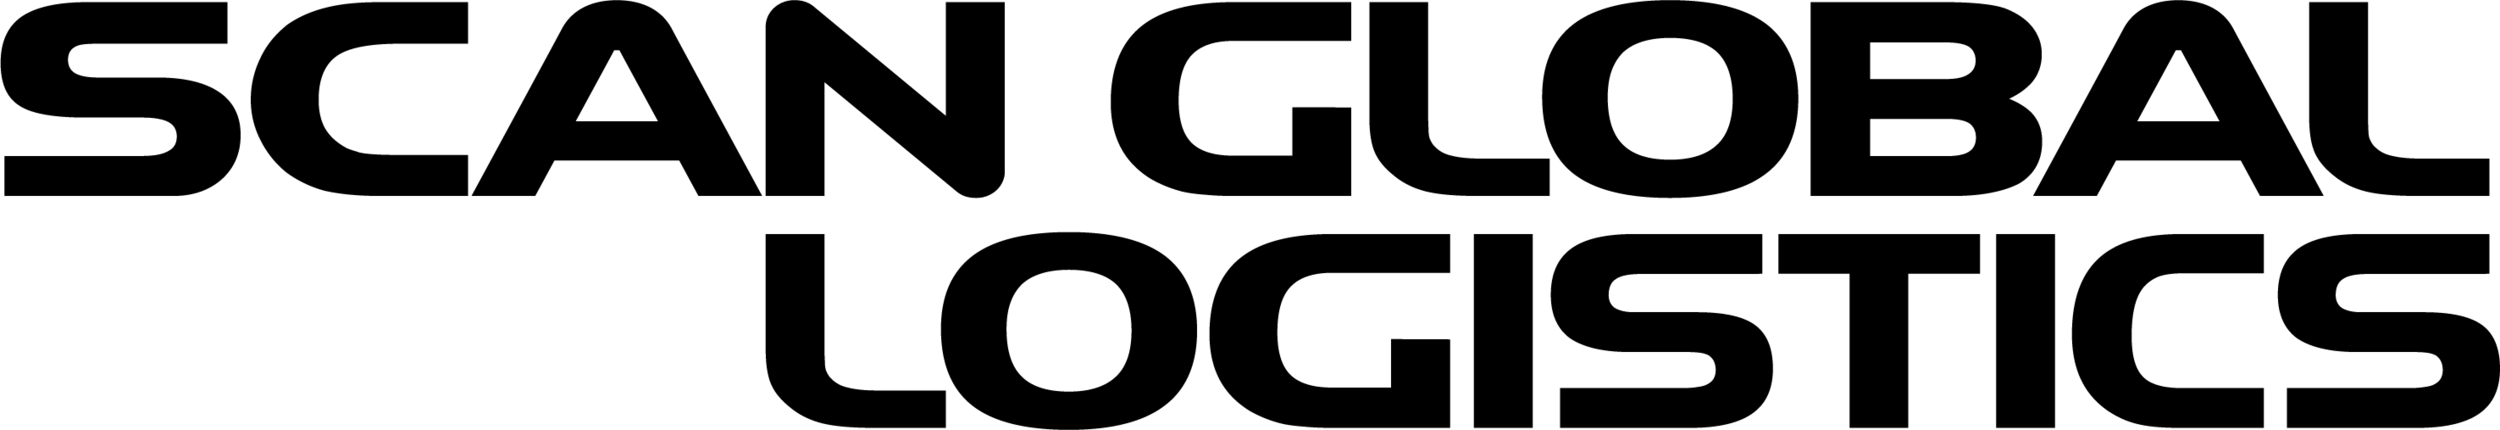 Scan-Global-Logistics-logo-digital-BLACK.png